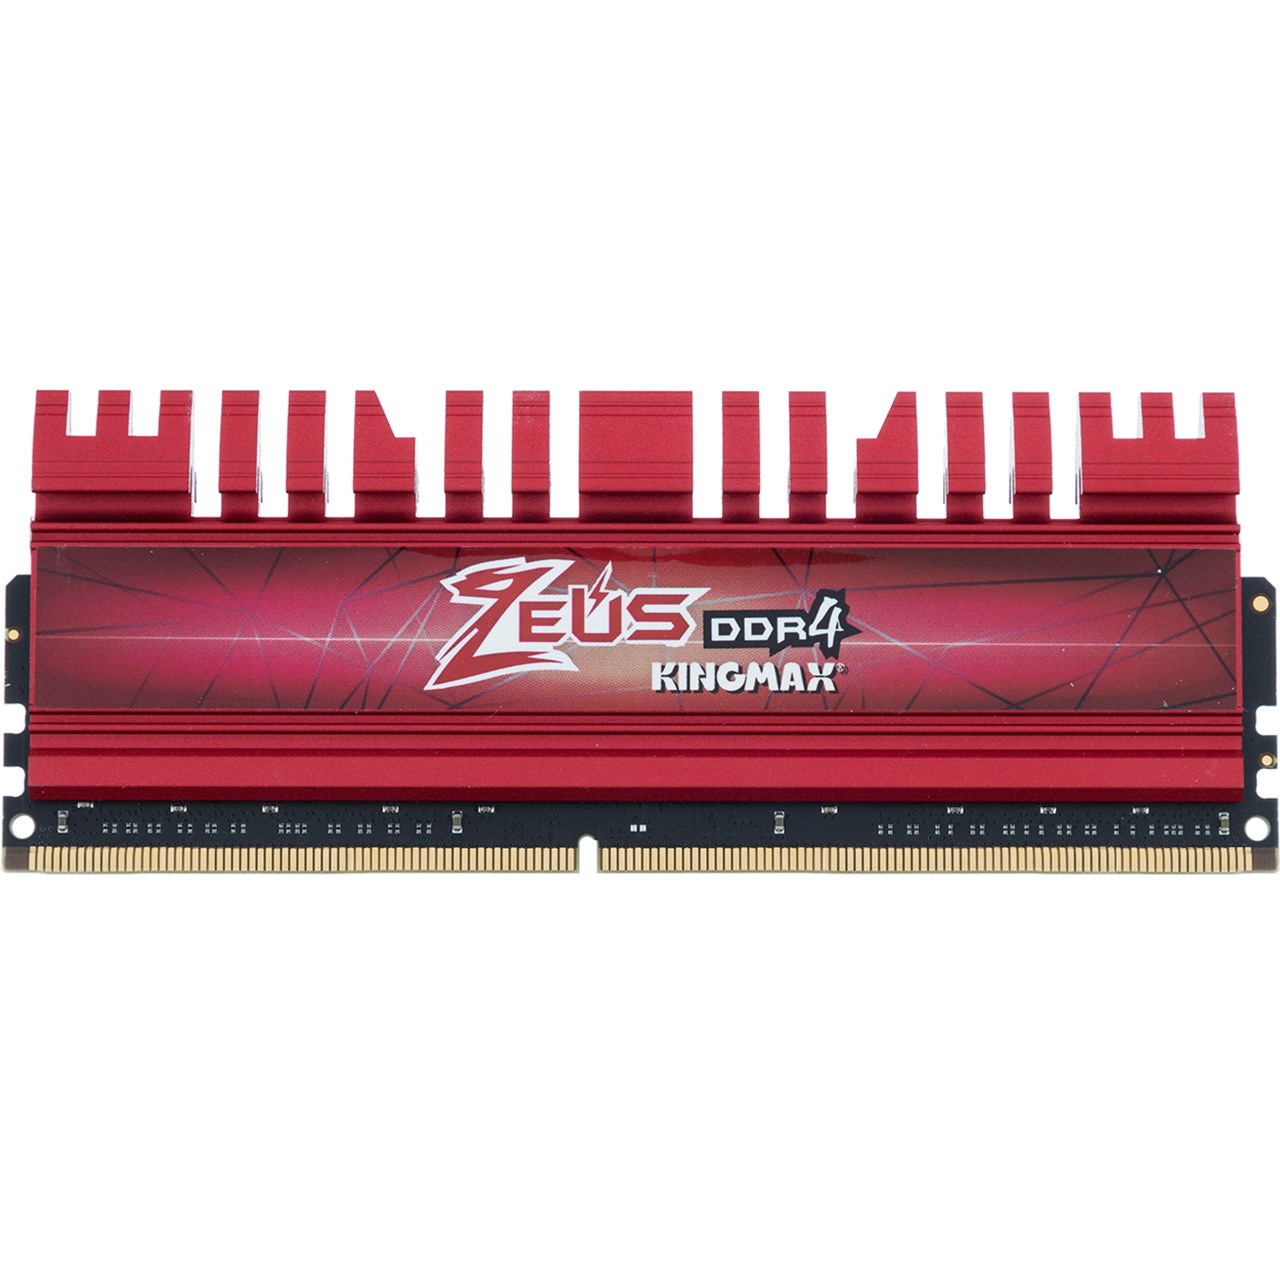 رم دسکتاپ DDR4 تک کاناله 2800 مگاهرتز CL17 کینگ مکس مدل Zeus ظرفیت 16 گیگابایت